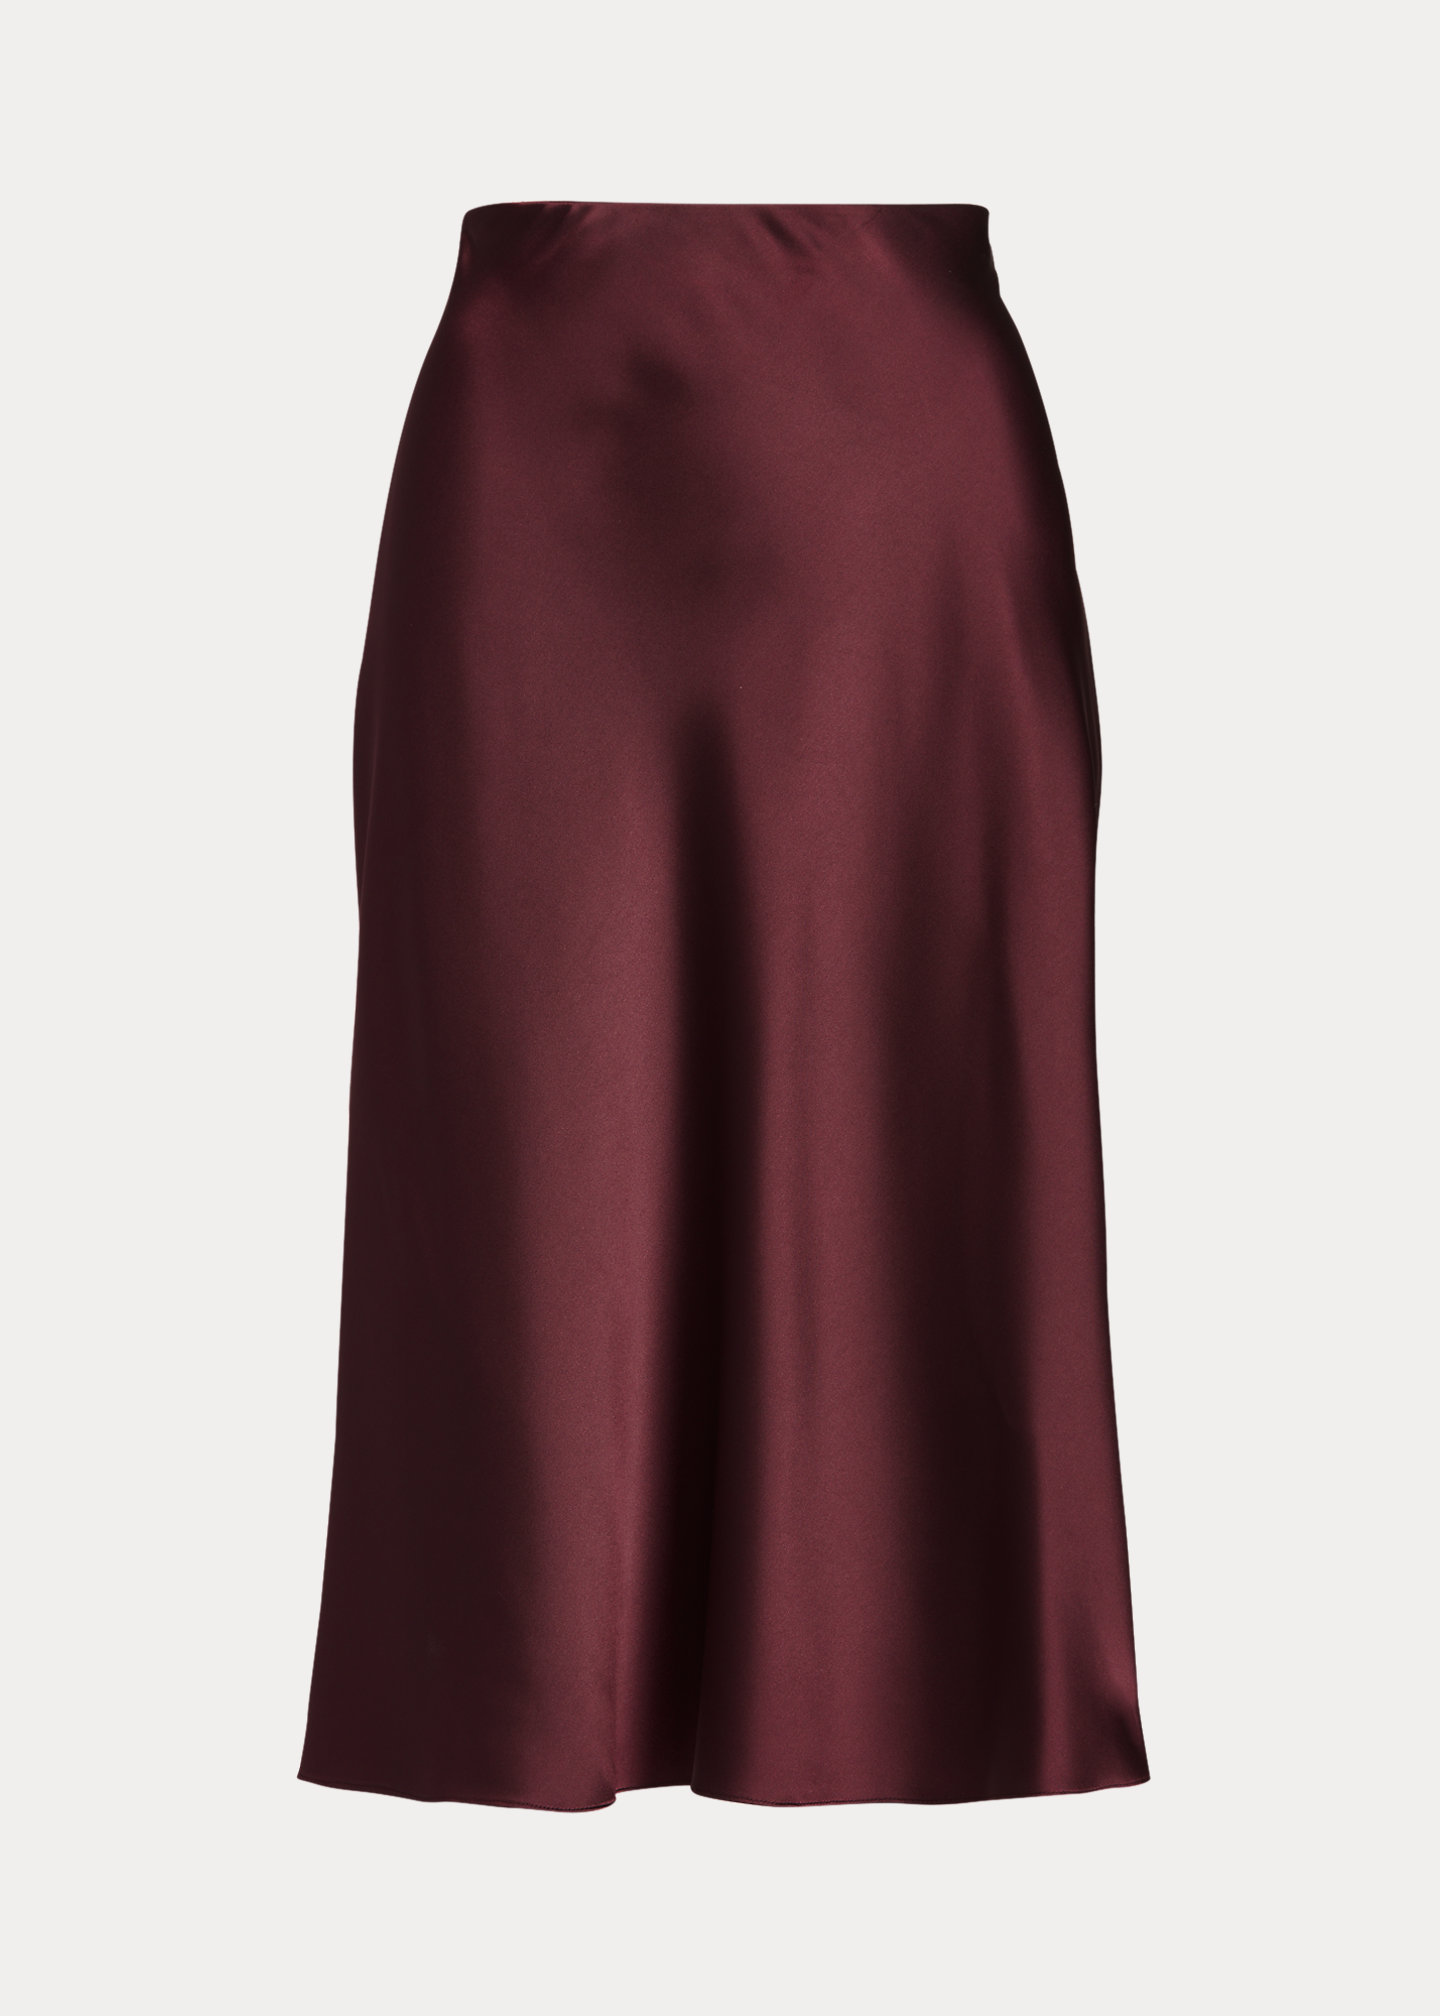 Ralph Lauren Satin Skirt